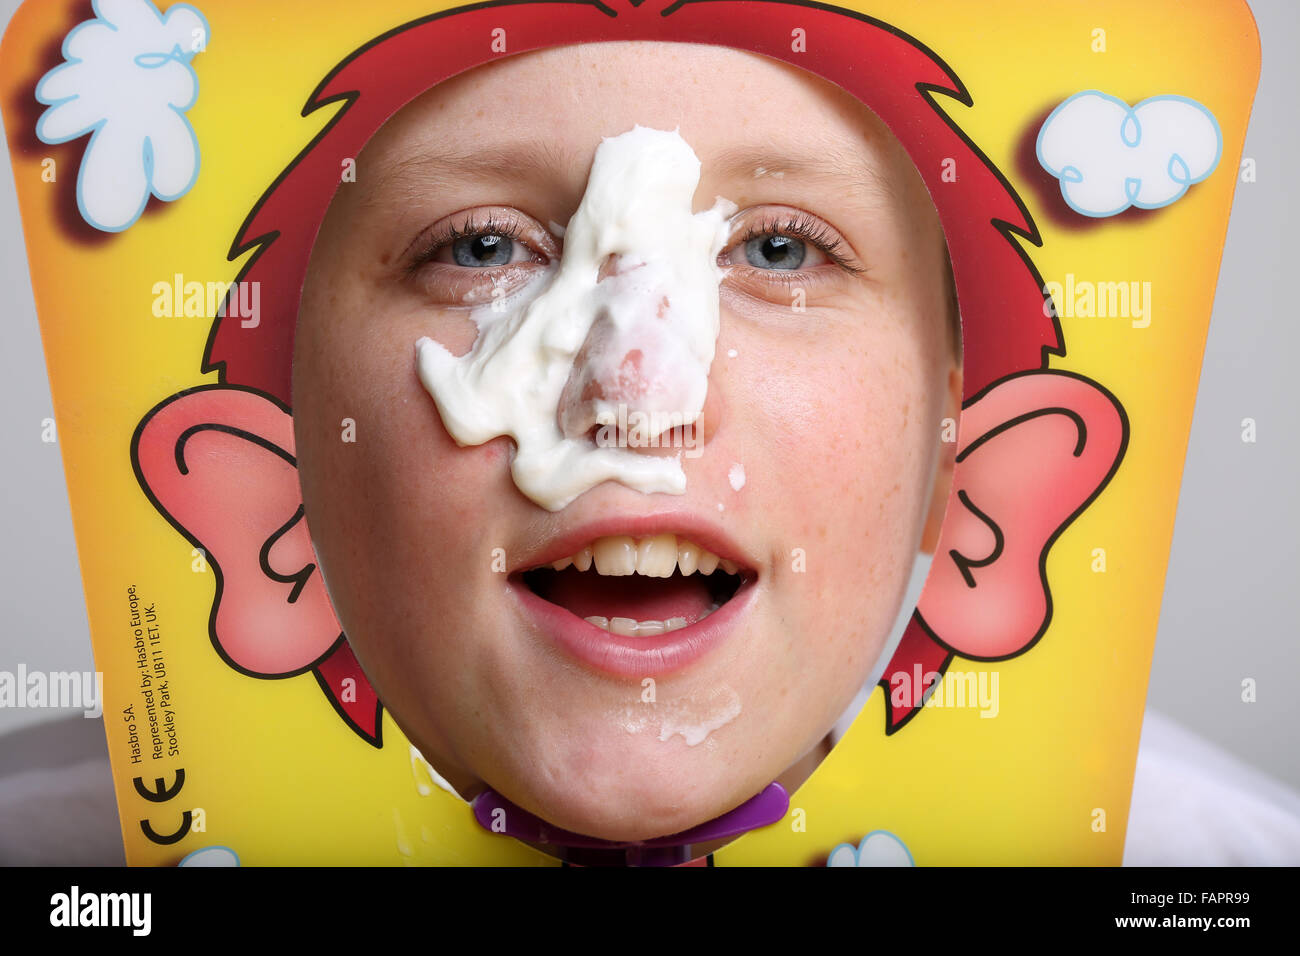 Ein Junge spielt das Brettspiel Pie Gesicht von Hasbro in Creme bedeckt Stockfoto